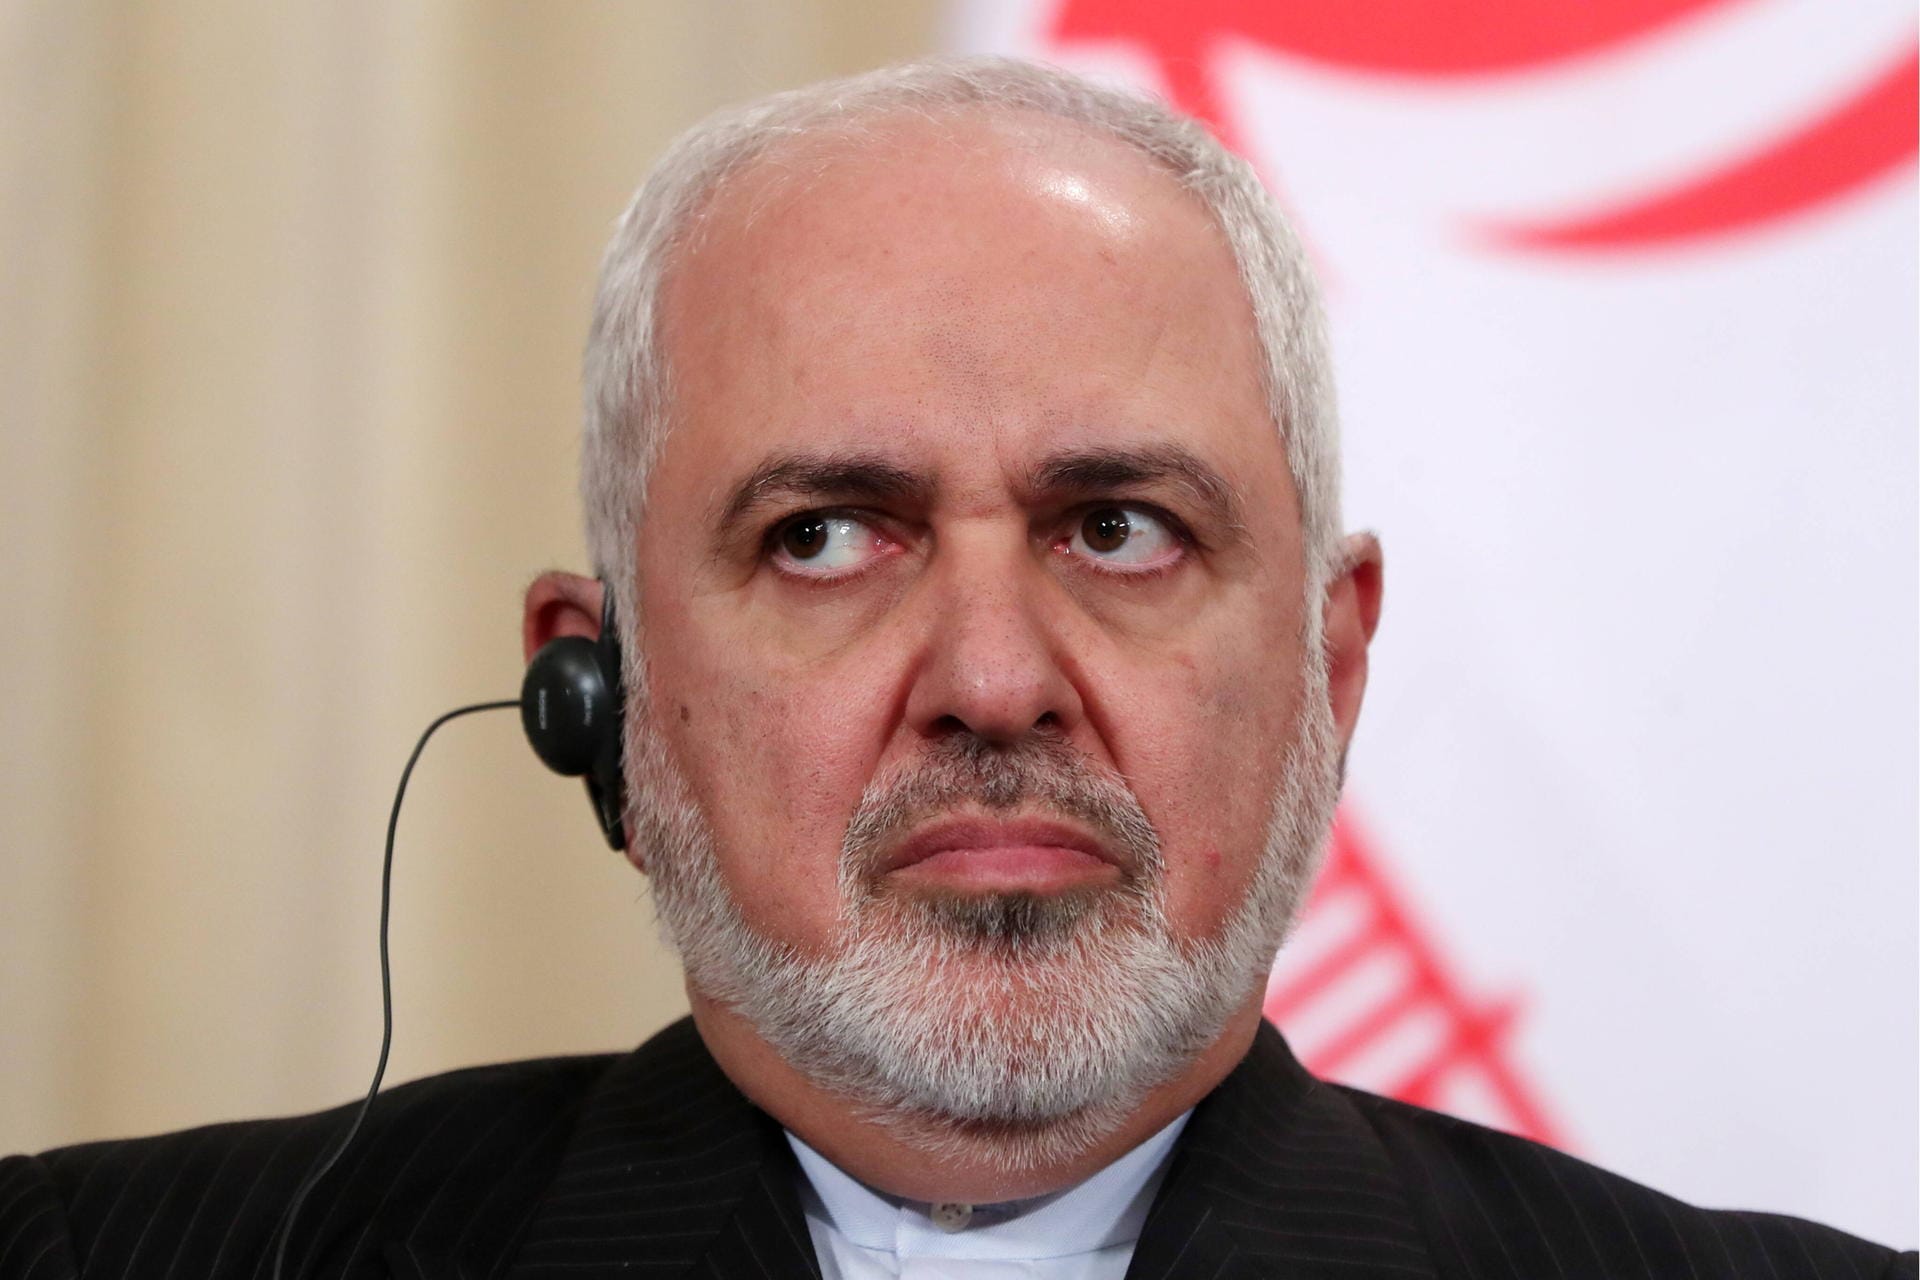 Der iranische Außenminister Mohammed Dschawad Sarif hat den tödlichen US-Raketenangriff auf den iranischen General Kassem Soleimani als "extrem gefährliche" und "dumme Eskalation" bezeichnet. Sarif verurteilte die Tötung des Generals in auf Twitter als "Akt des internationalen Terrorismus".